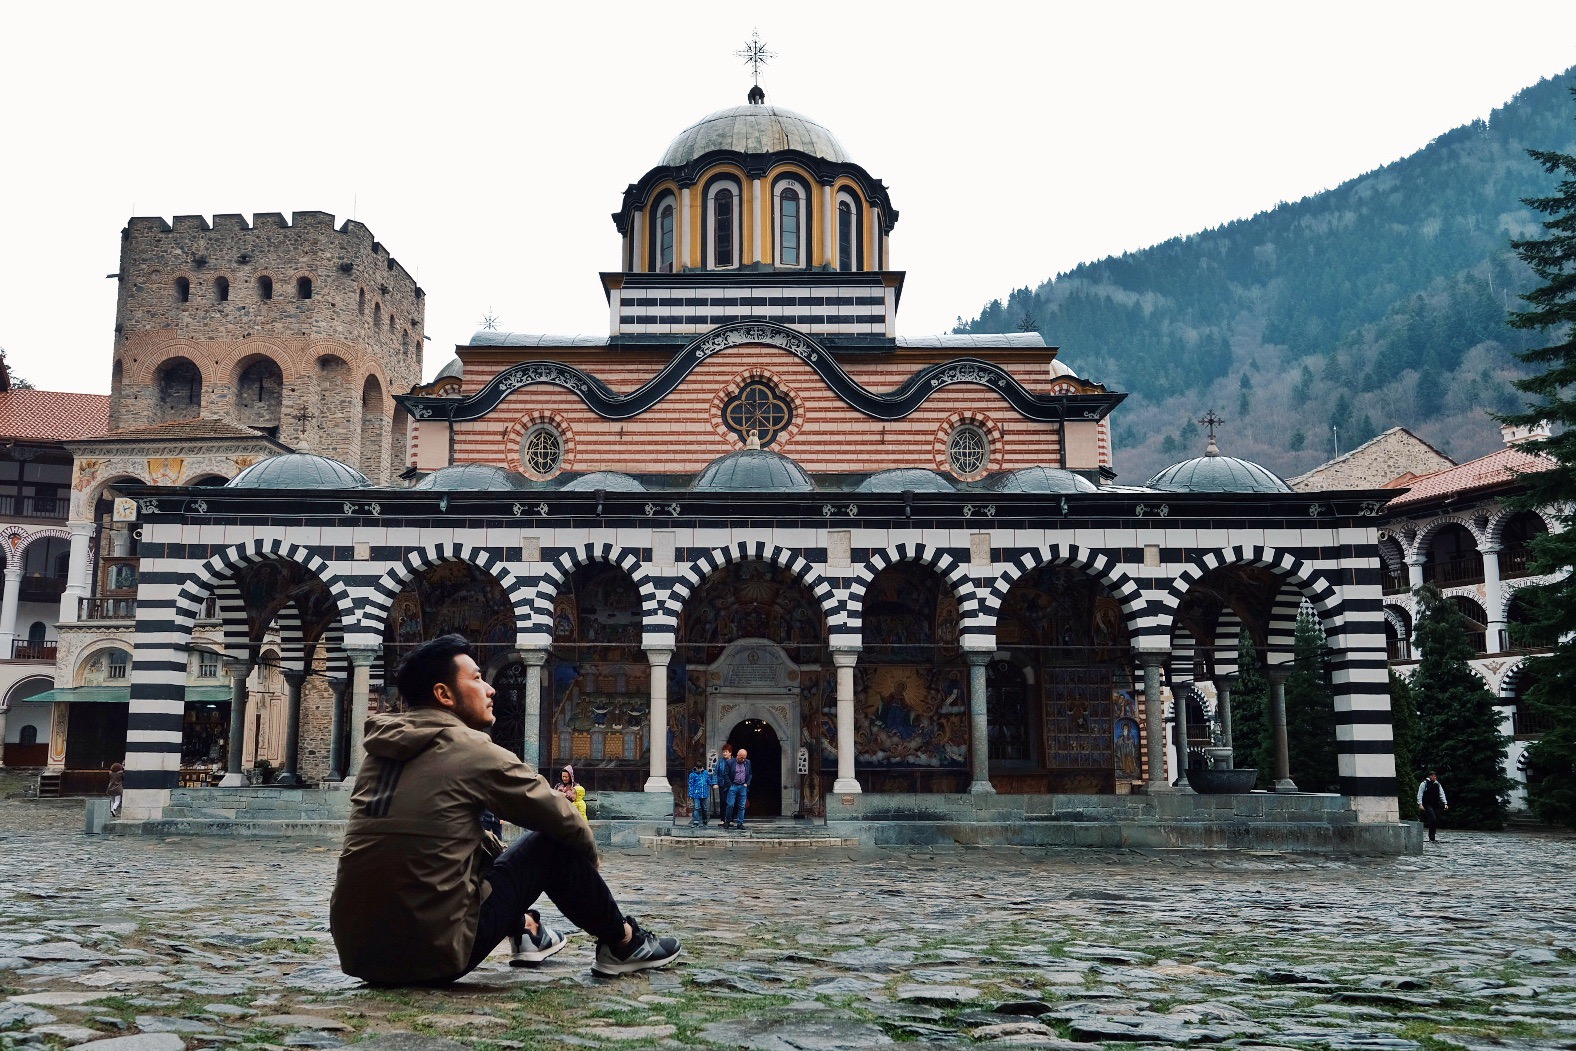 【环游东欧】📍里拉修道院 巴尔干深山中的里拉修道院，是东正教圣徒圣伊万苦修的场所，在曾经奥斯曼帝国入